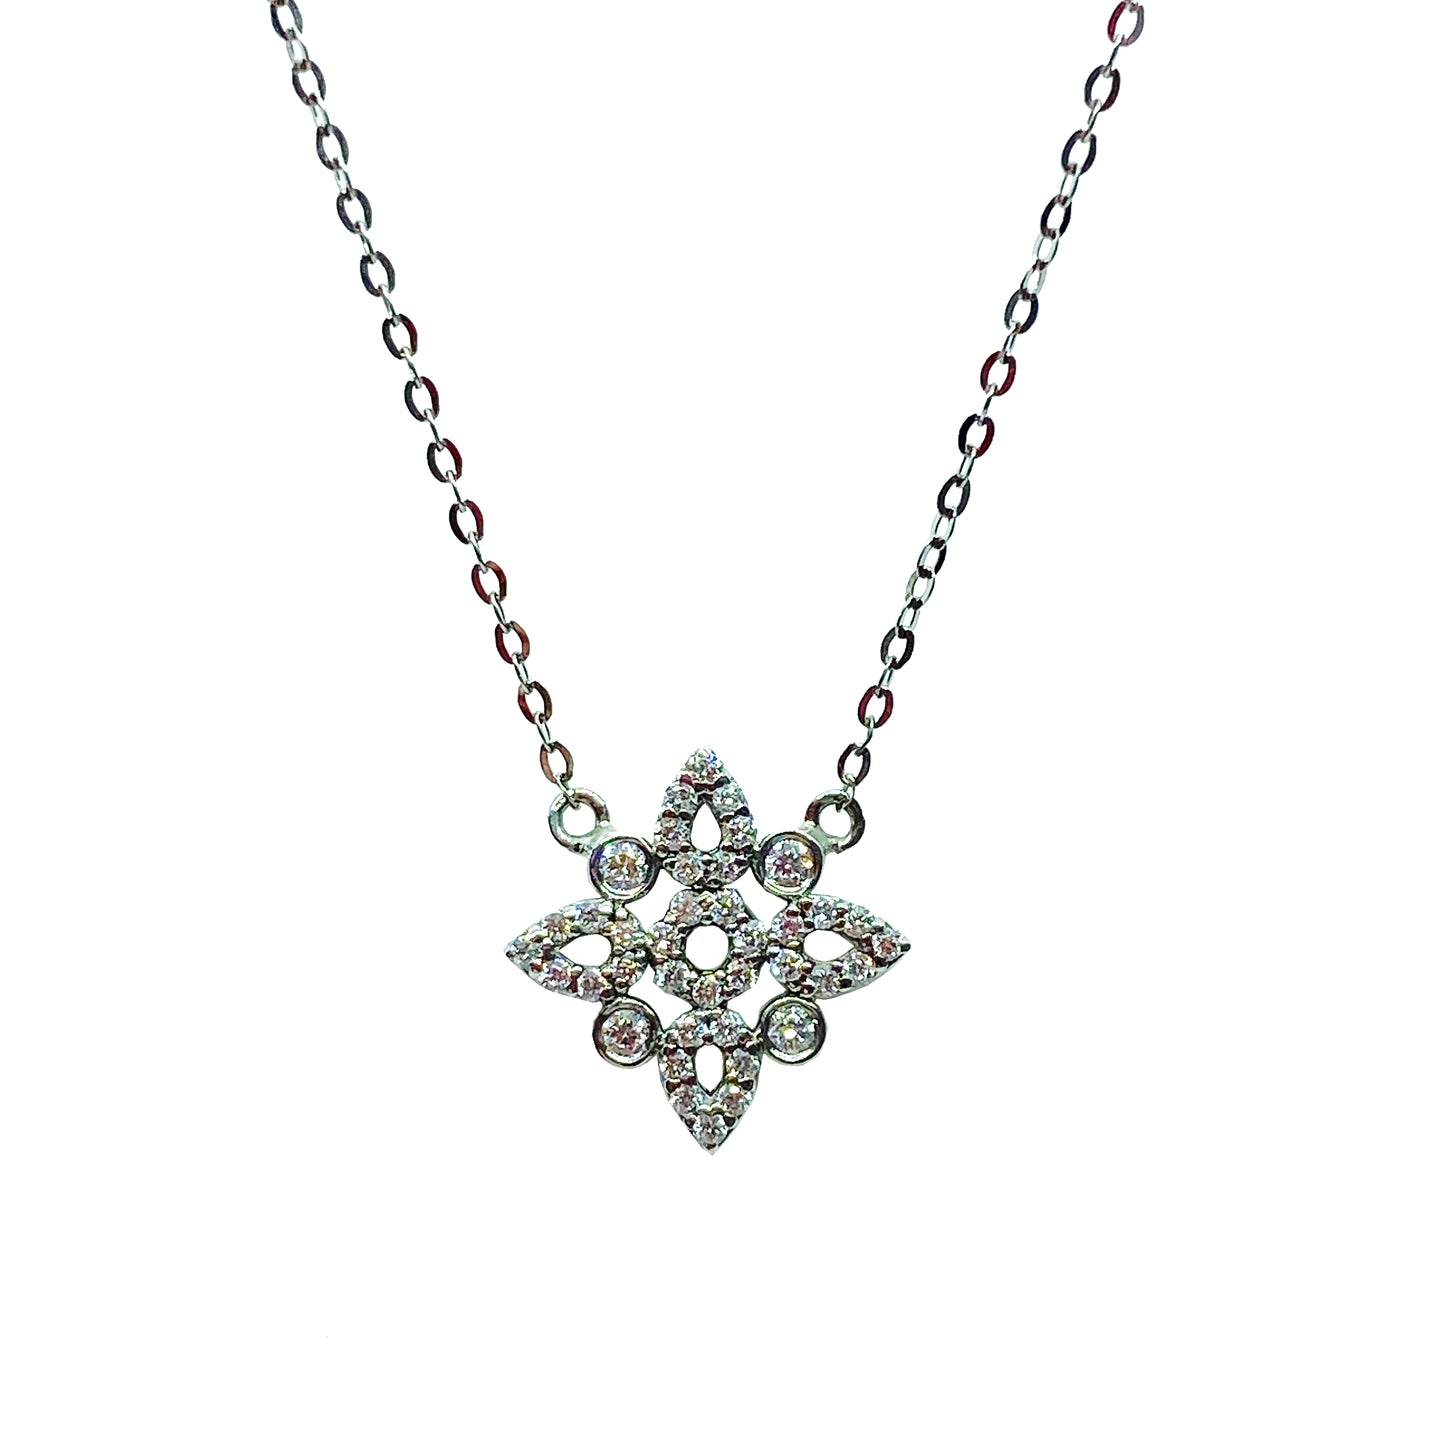 18kw Diamond Flower Necklace by Ferro & Fiori - eklektic jewelry studio